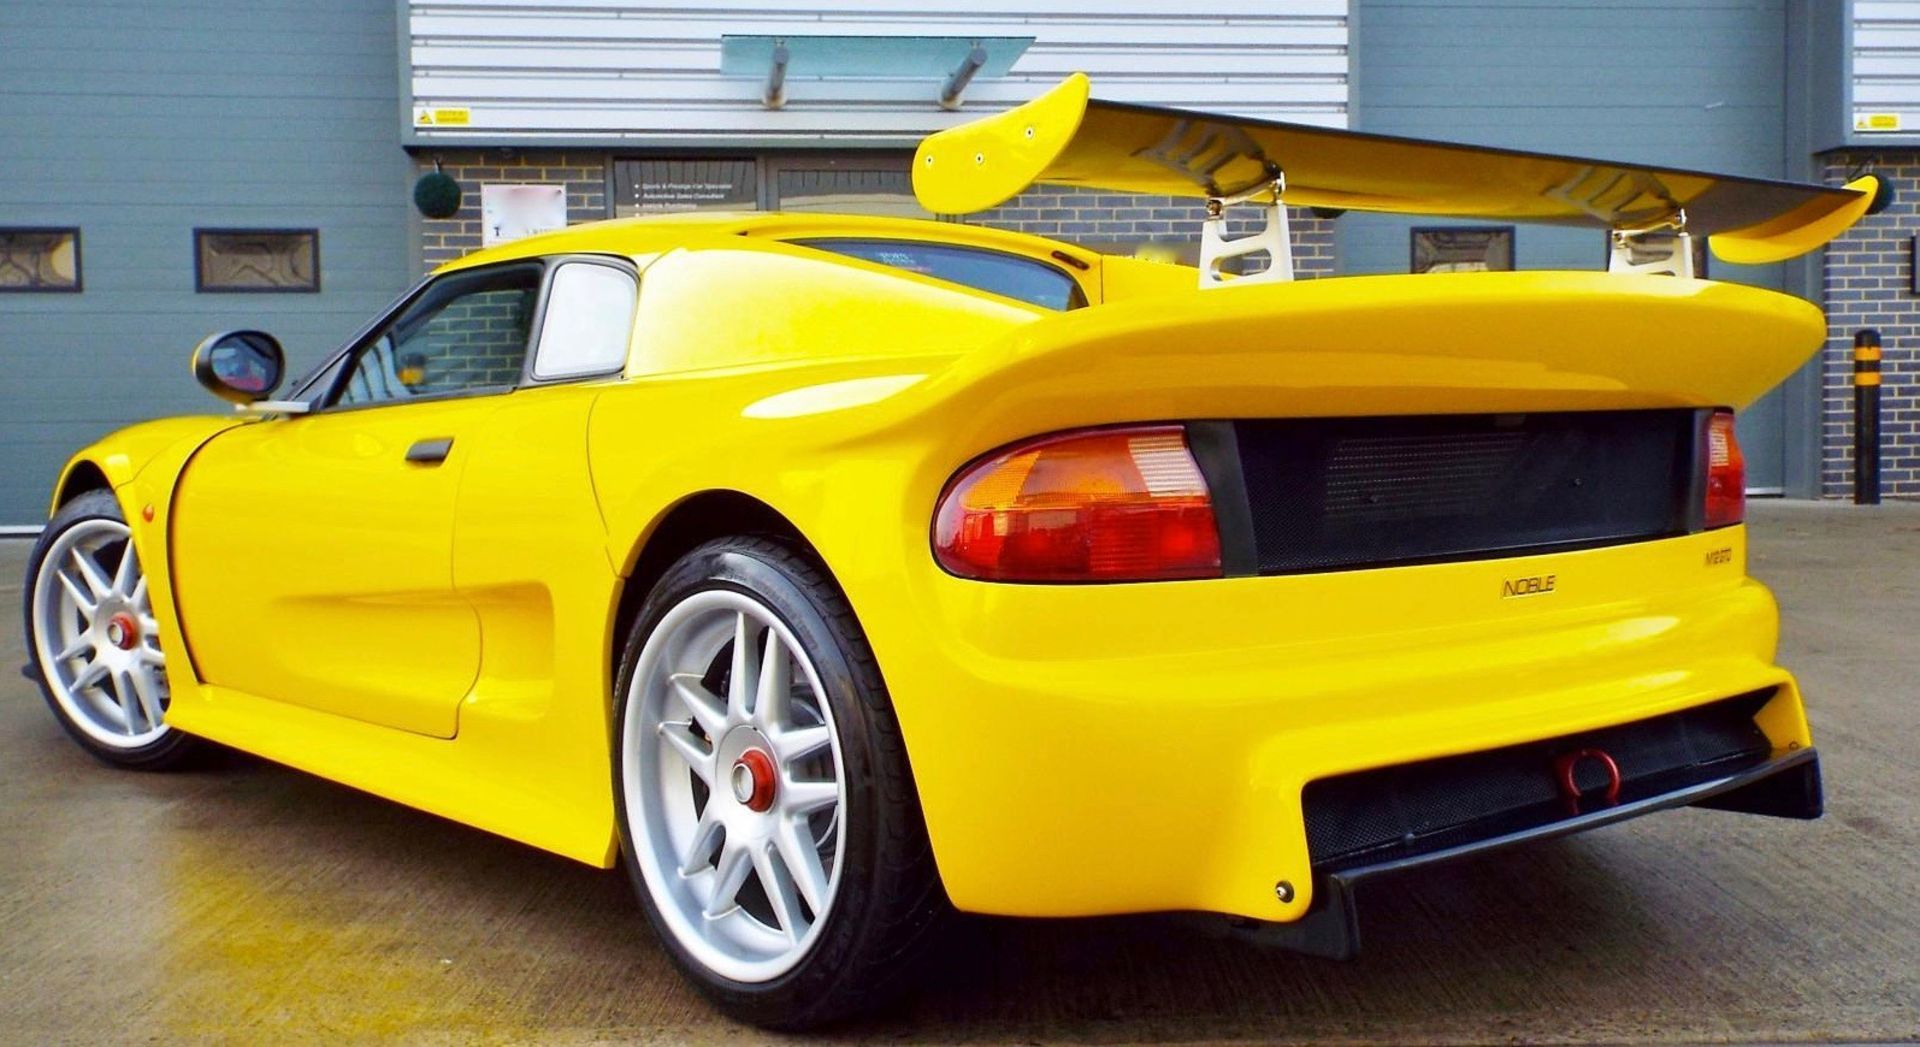 2002 Noble M12 GTO 2.5 V6 Bi - Turbo - Image 6 of 12